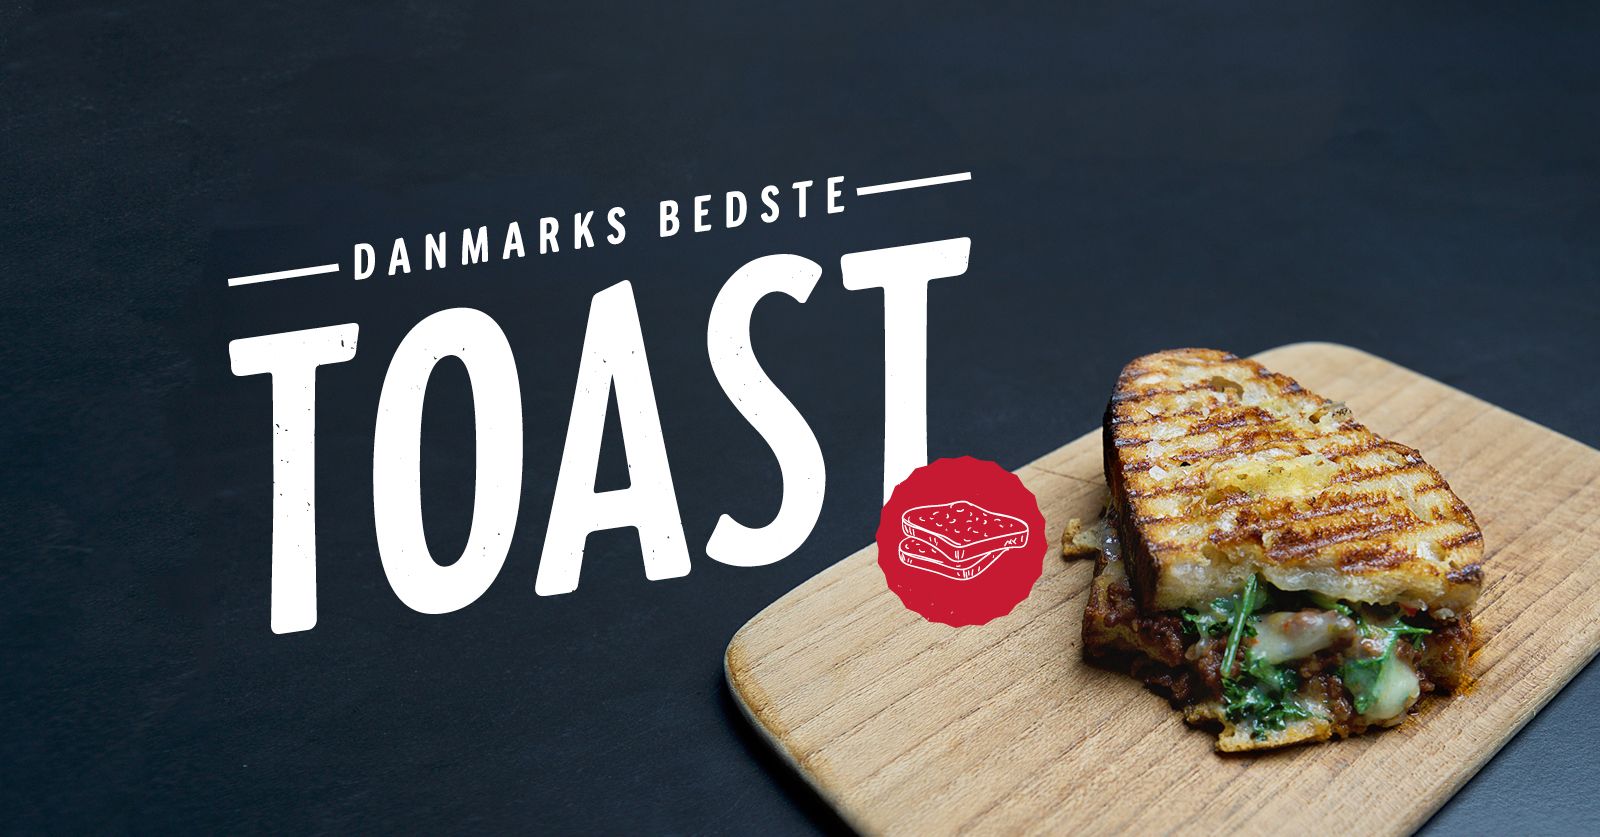 Laver du Danmarks bedste toast?